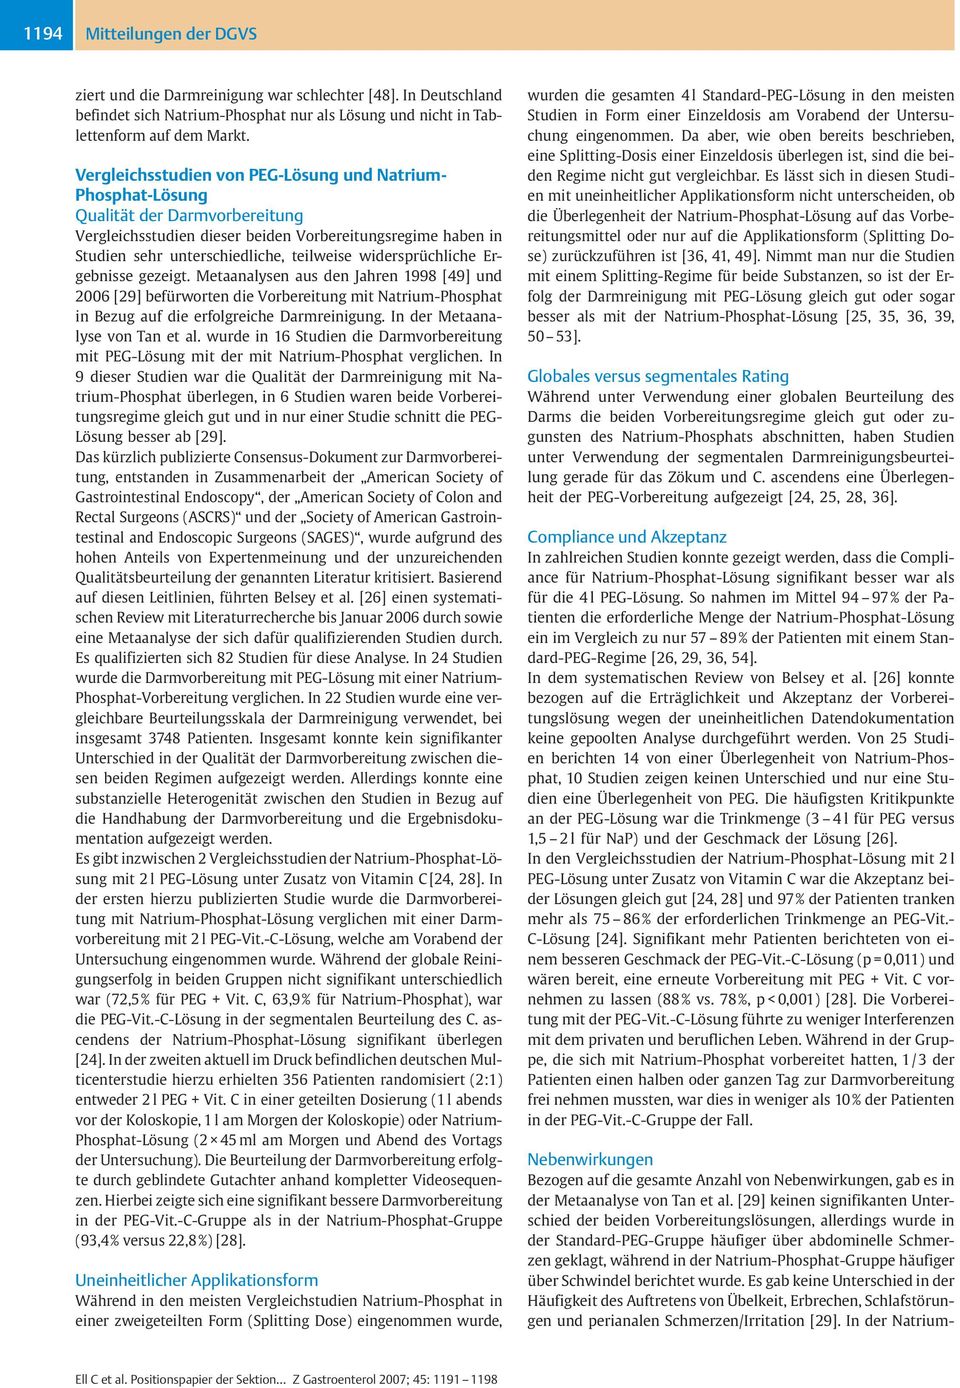 widersprüchliche Ergebnisse gezeigt. Metaanalysen aus den Jahren 1998 [49] und 2006 [29] befürworten die Vorbereitung mit Natrium-Phosphat in Bezug auf die erfolgreiche Darmreinigung.